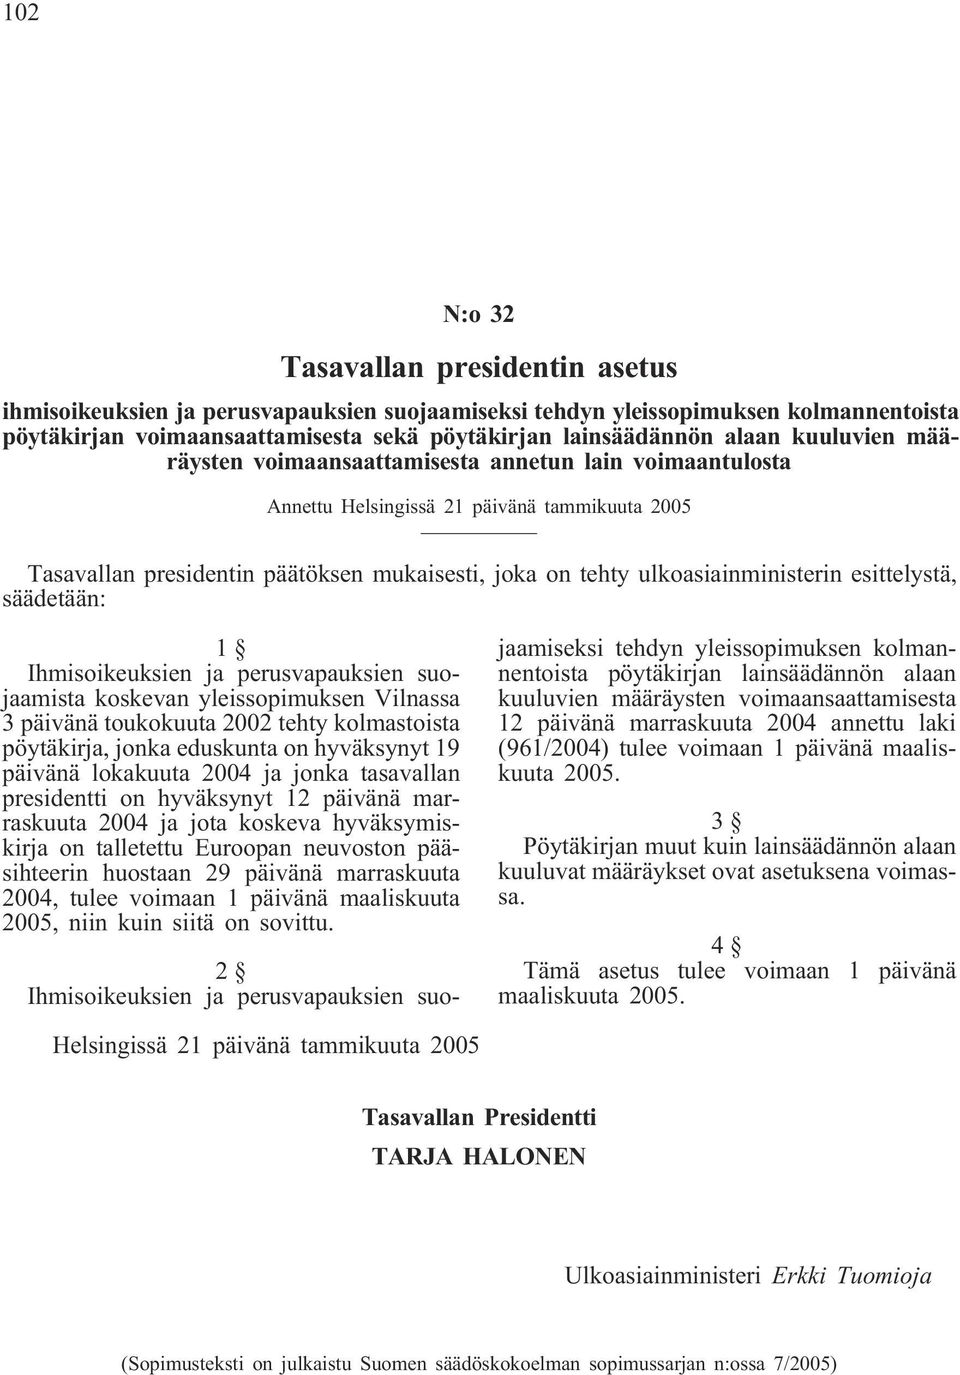 esittelystä, säädetään: 1 Ihmisoikeuksien ja perusvapauksien suojaamista koskevan yleissopimuksen Vilnassa 3 päivänä toukokuuta 2002 tehty kolmastoista pöytäkirja, jonka eduskunta on hyväksynyt 19